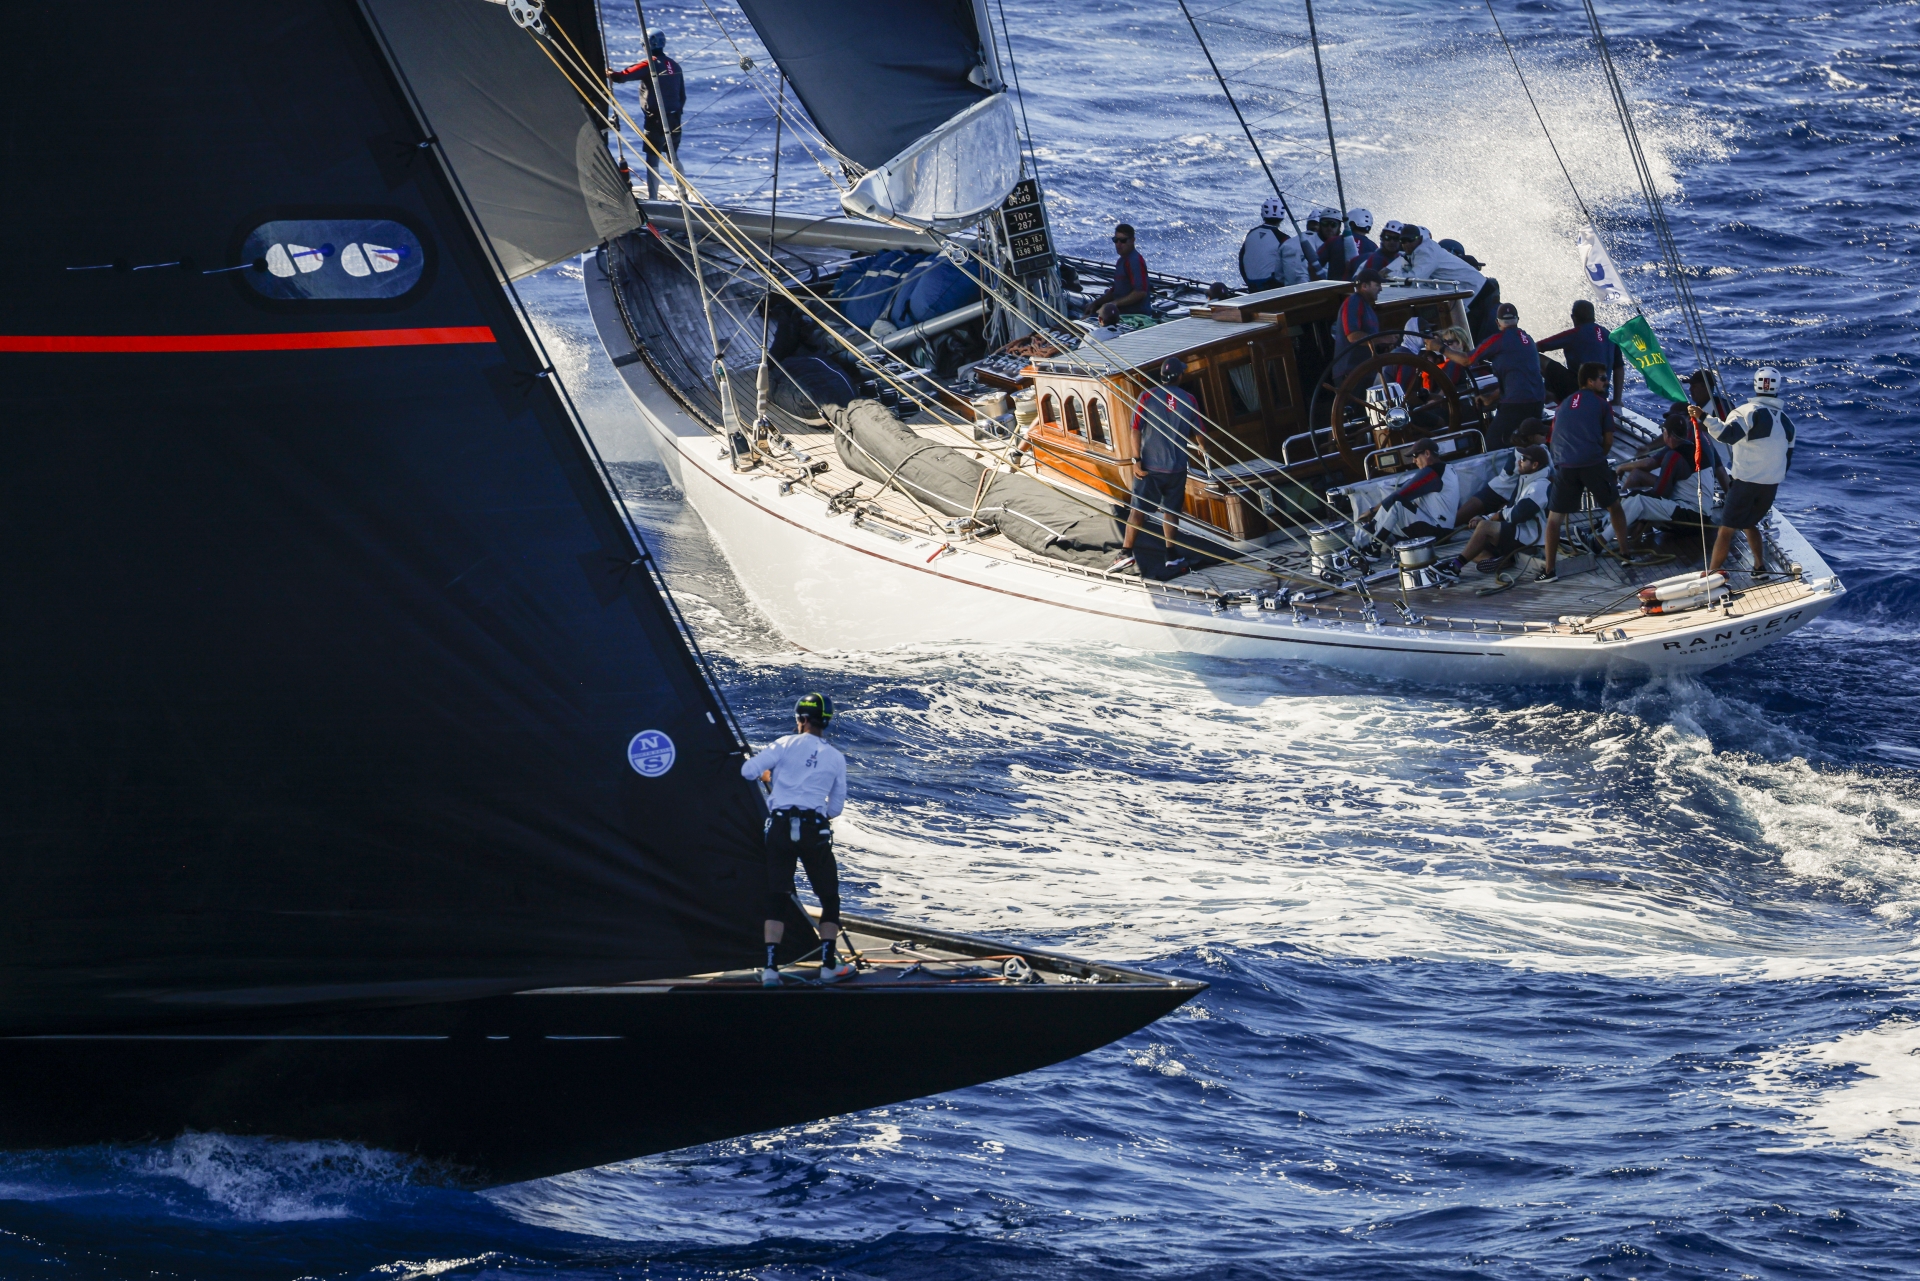 Vento perfetto nella penultima giornata della Maxi Yacht Rolex Cup - News - Yacht Club Costa Smeralda